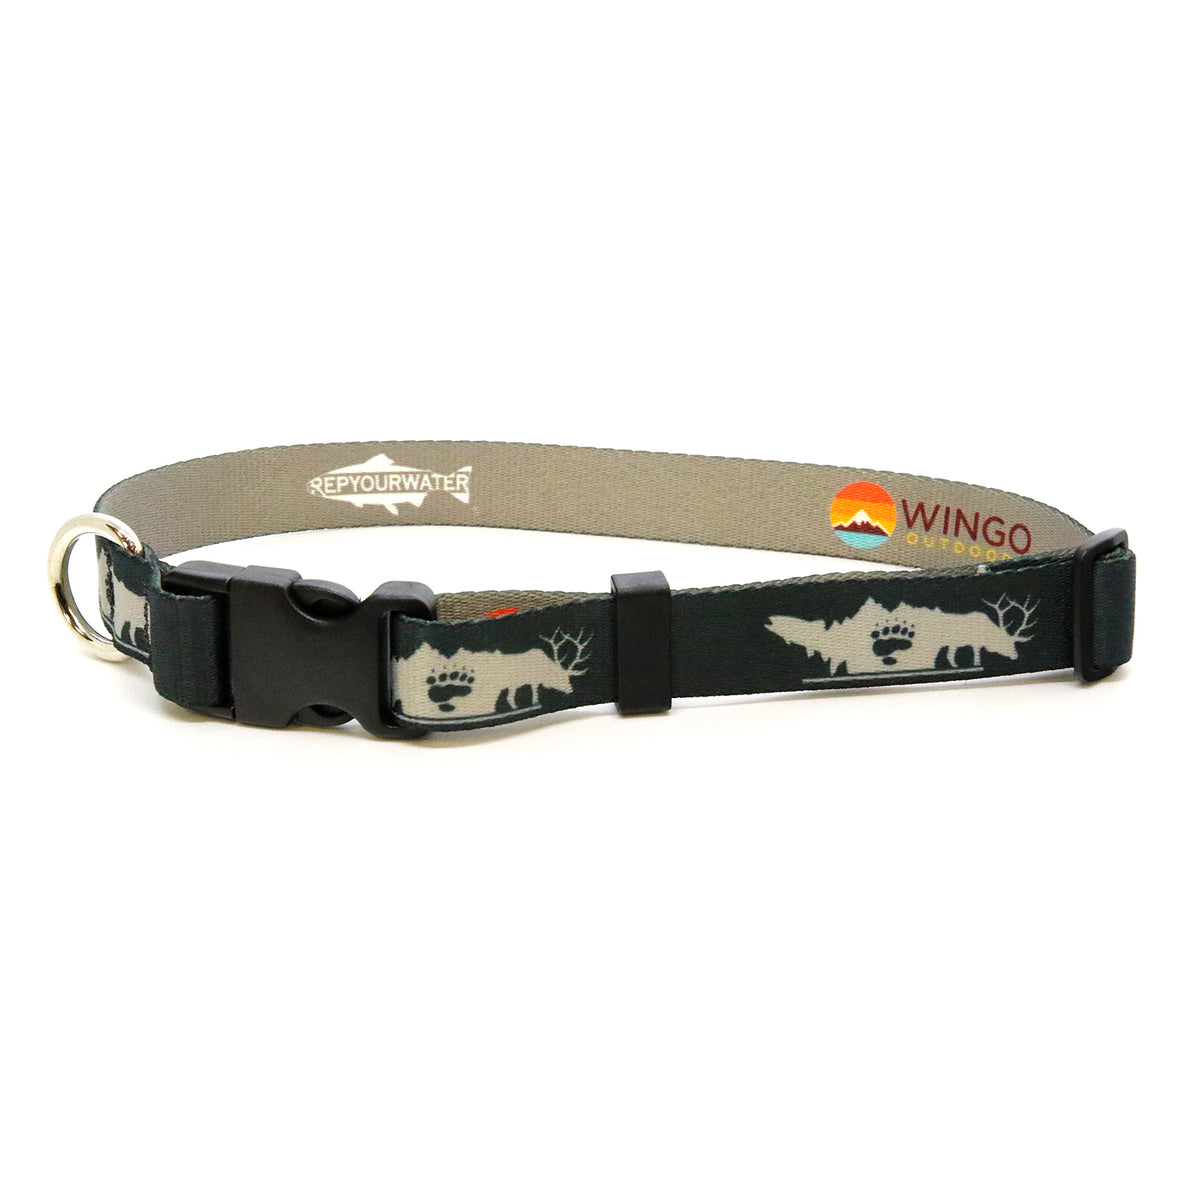 RepYourWater Dog Collar - Dark Navy